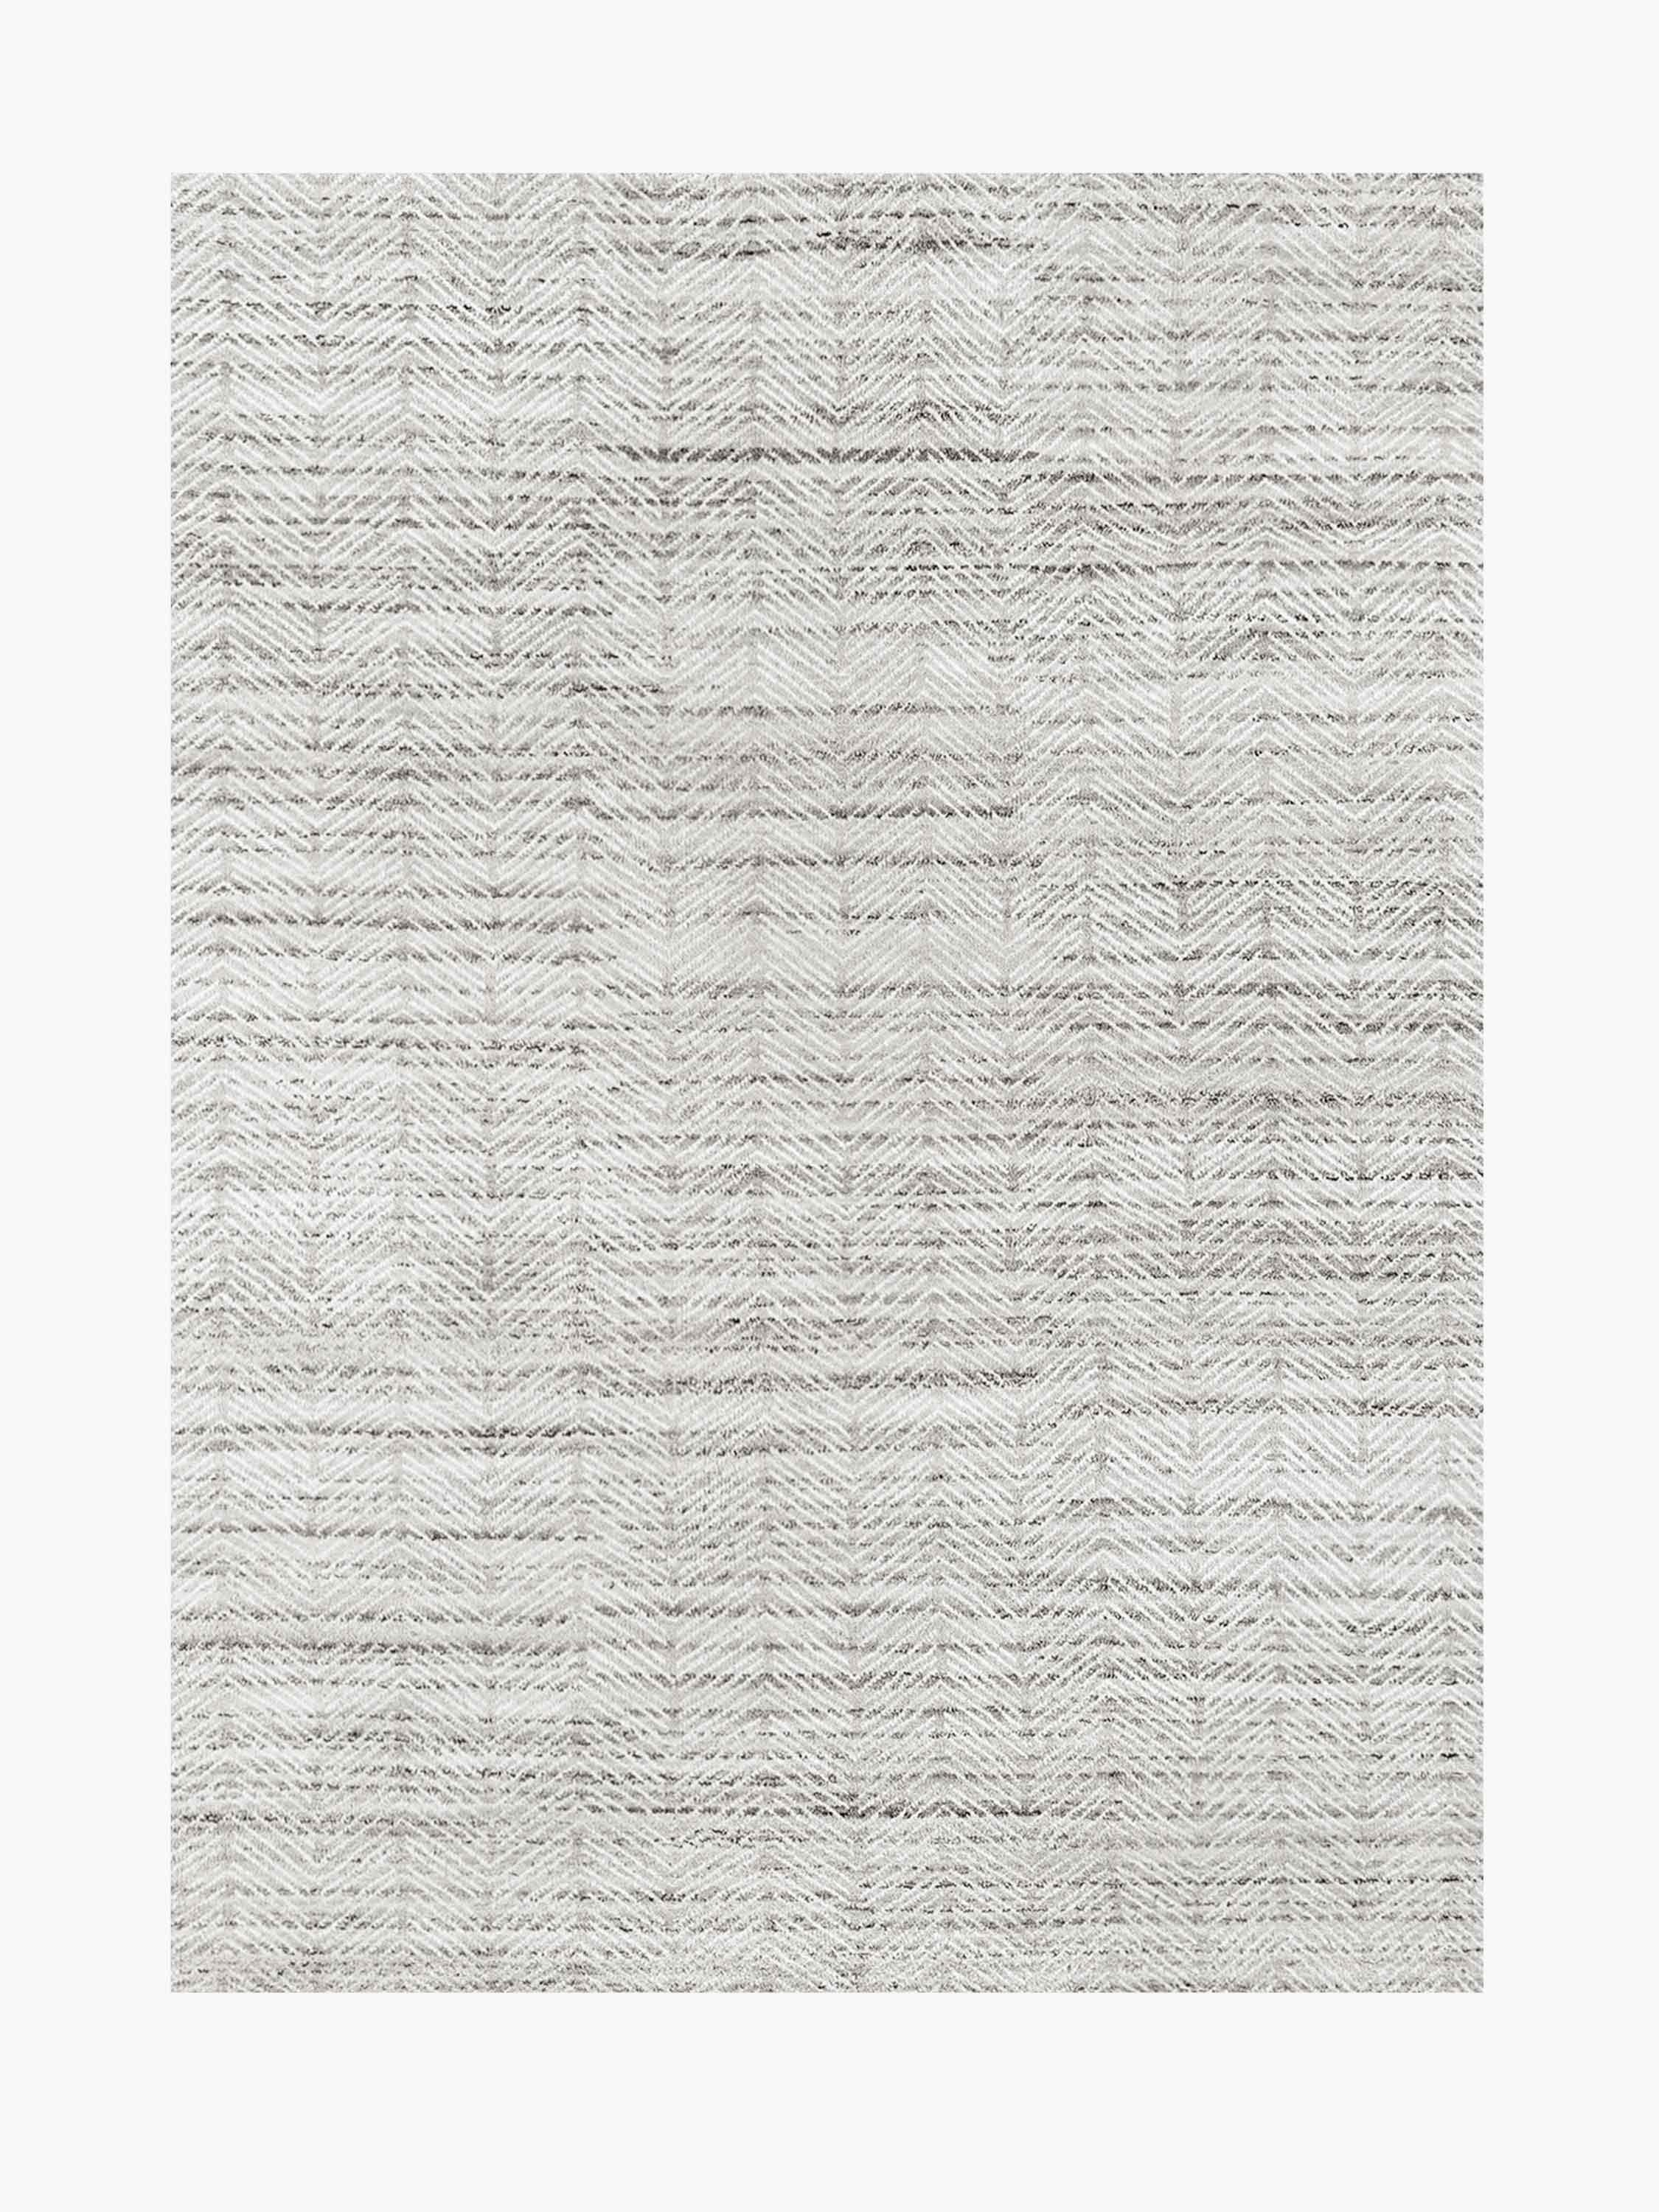 For Sale: Gray (Silver/White) Ben Soleimani Alia Rug– Hand-woven Chevron Wool + Viscose Black/Gray 8'x10'